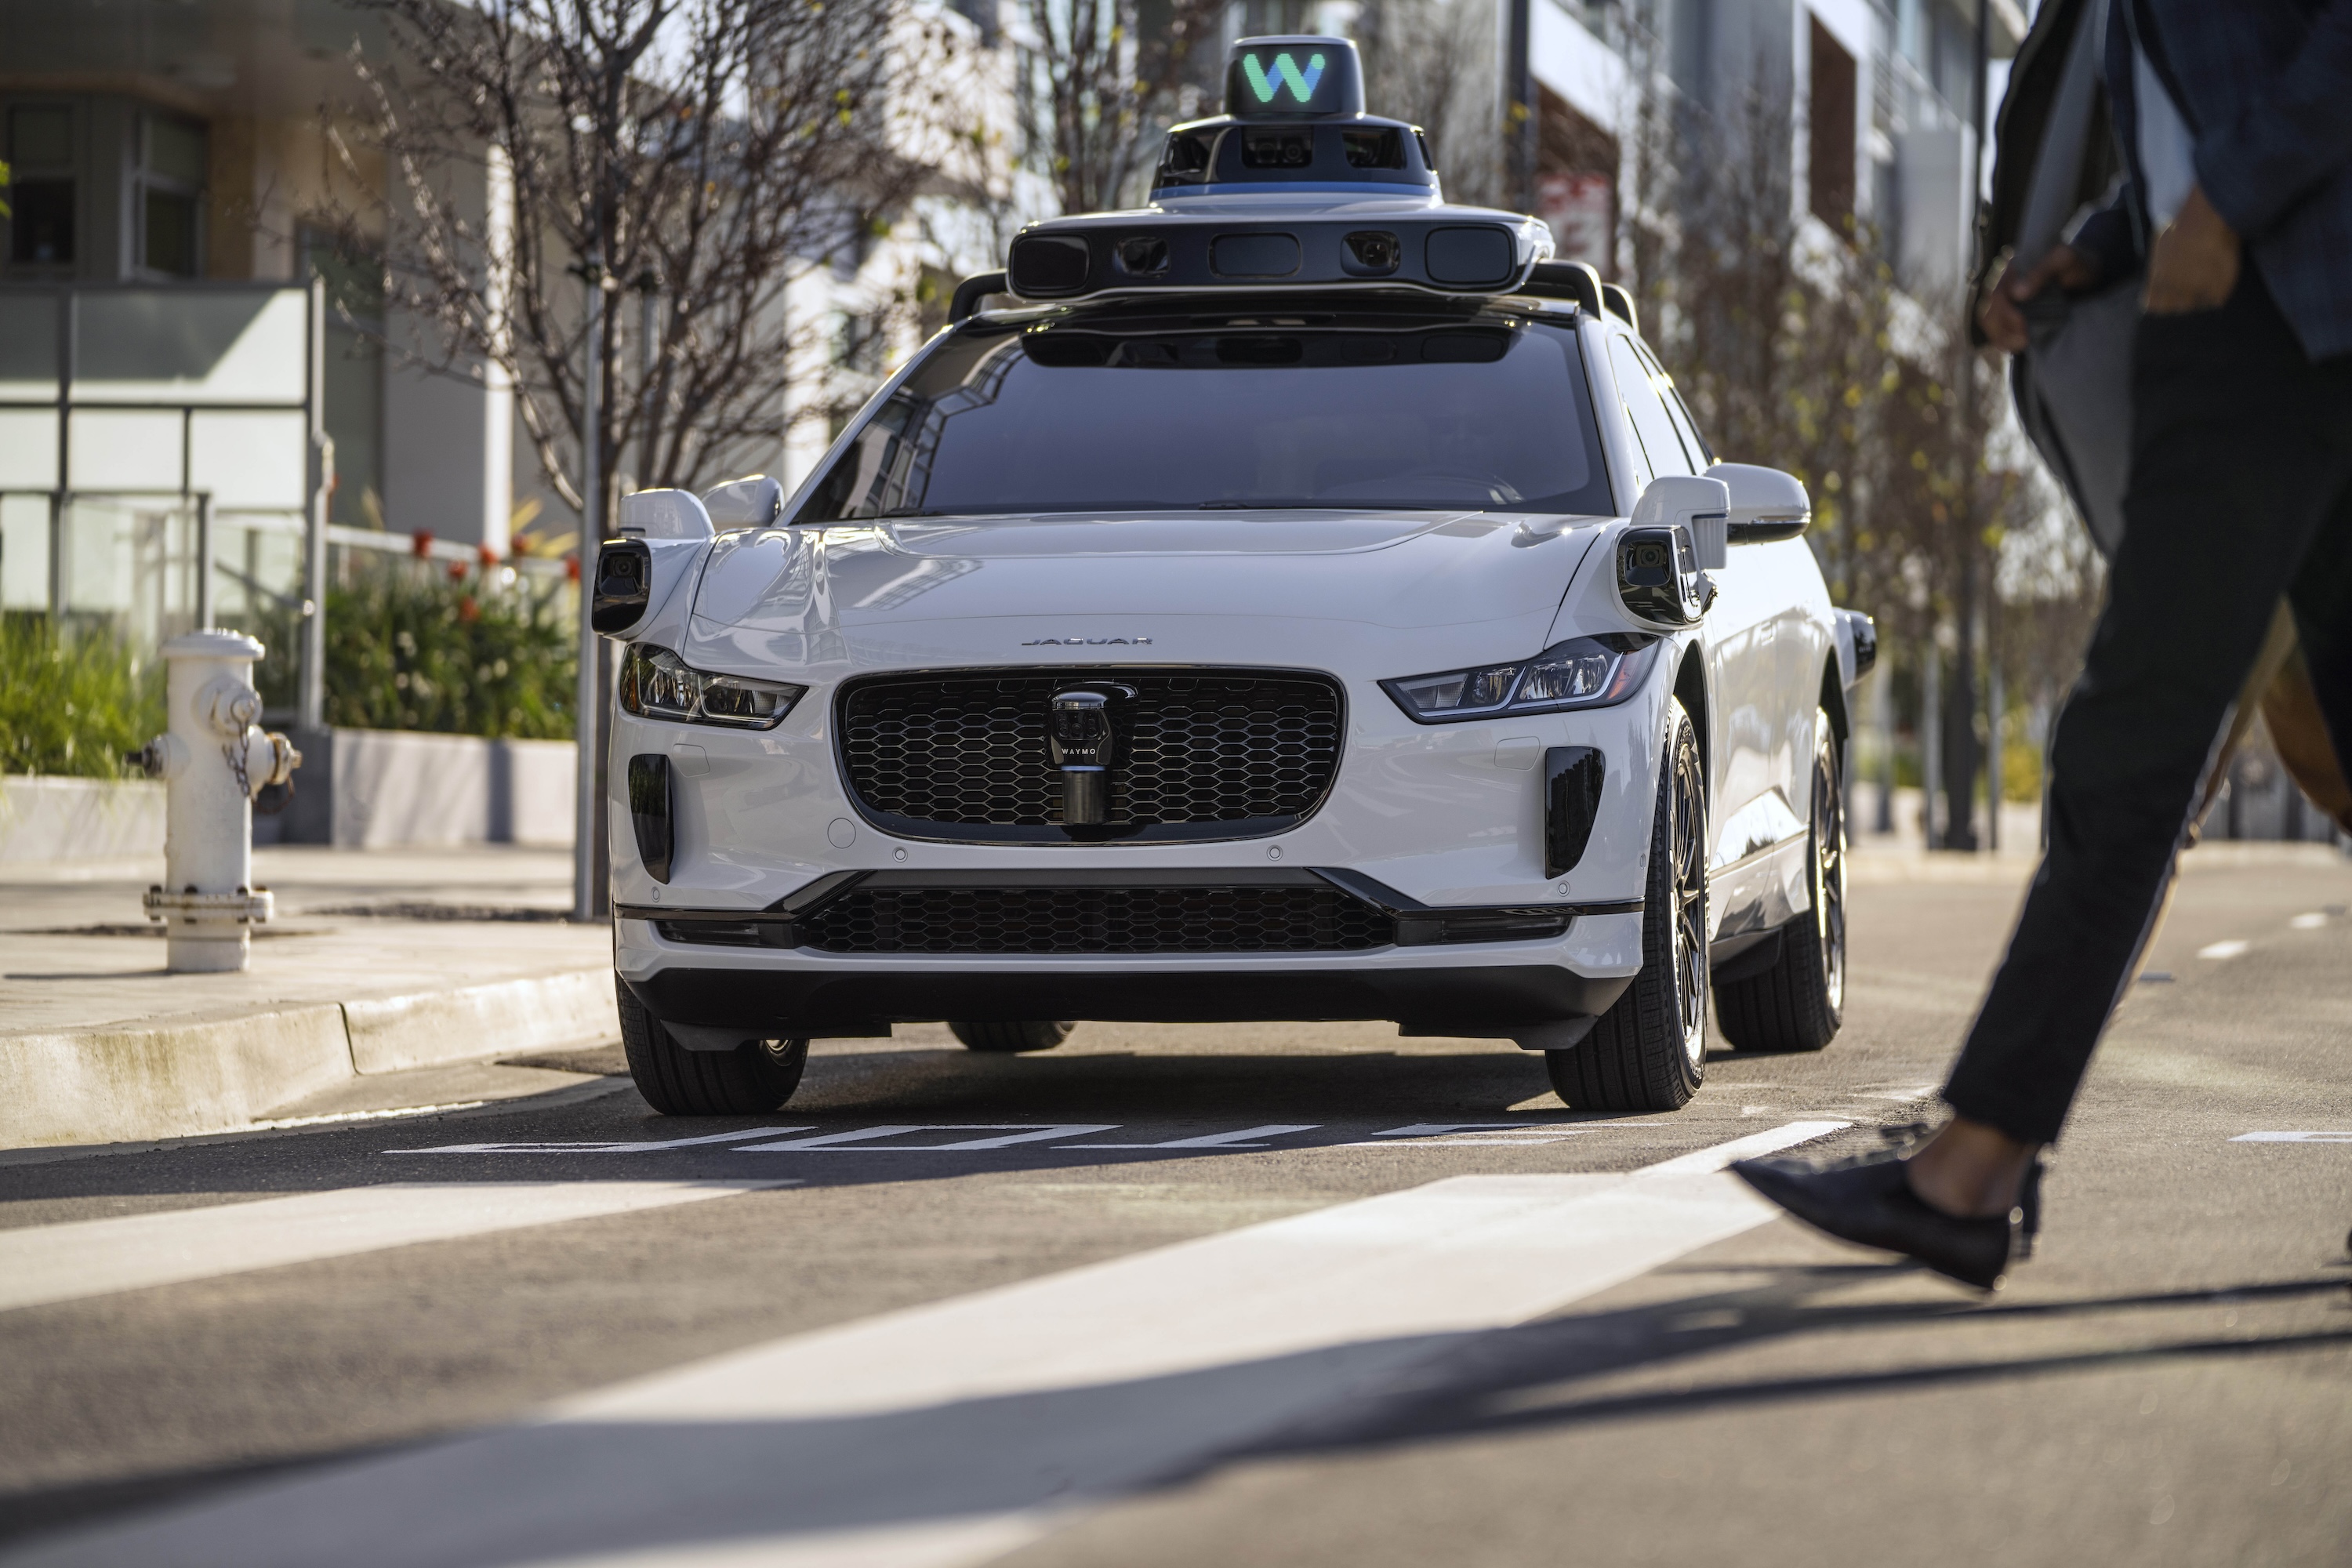 La Californie vient d'ouvrir une boîte de Pandore en autorisant les taxis  autonomes à circuler 24 h/24